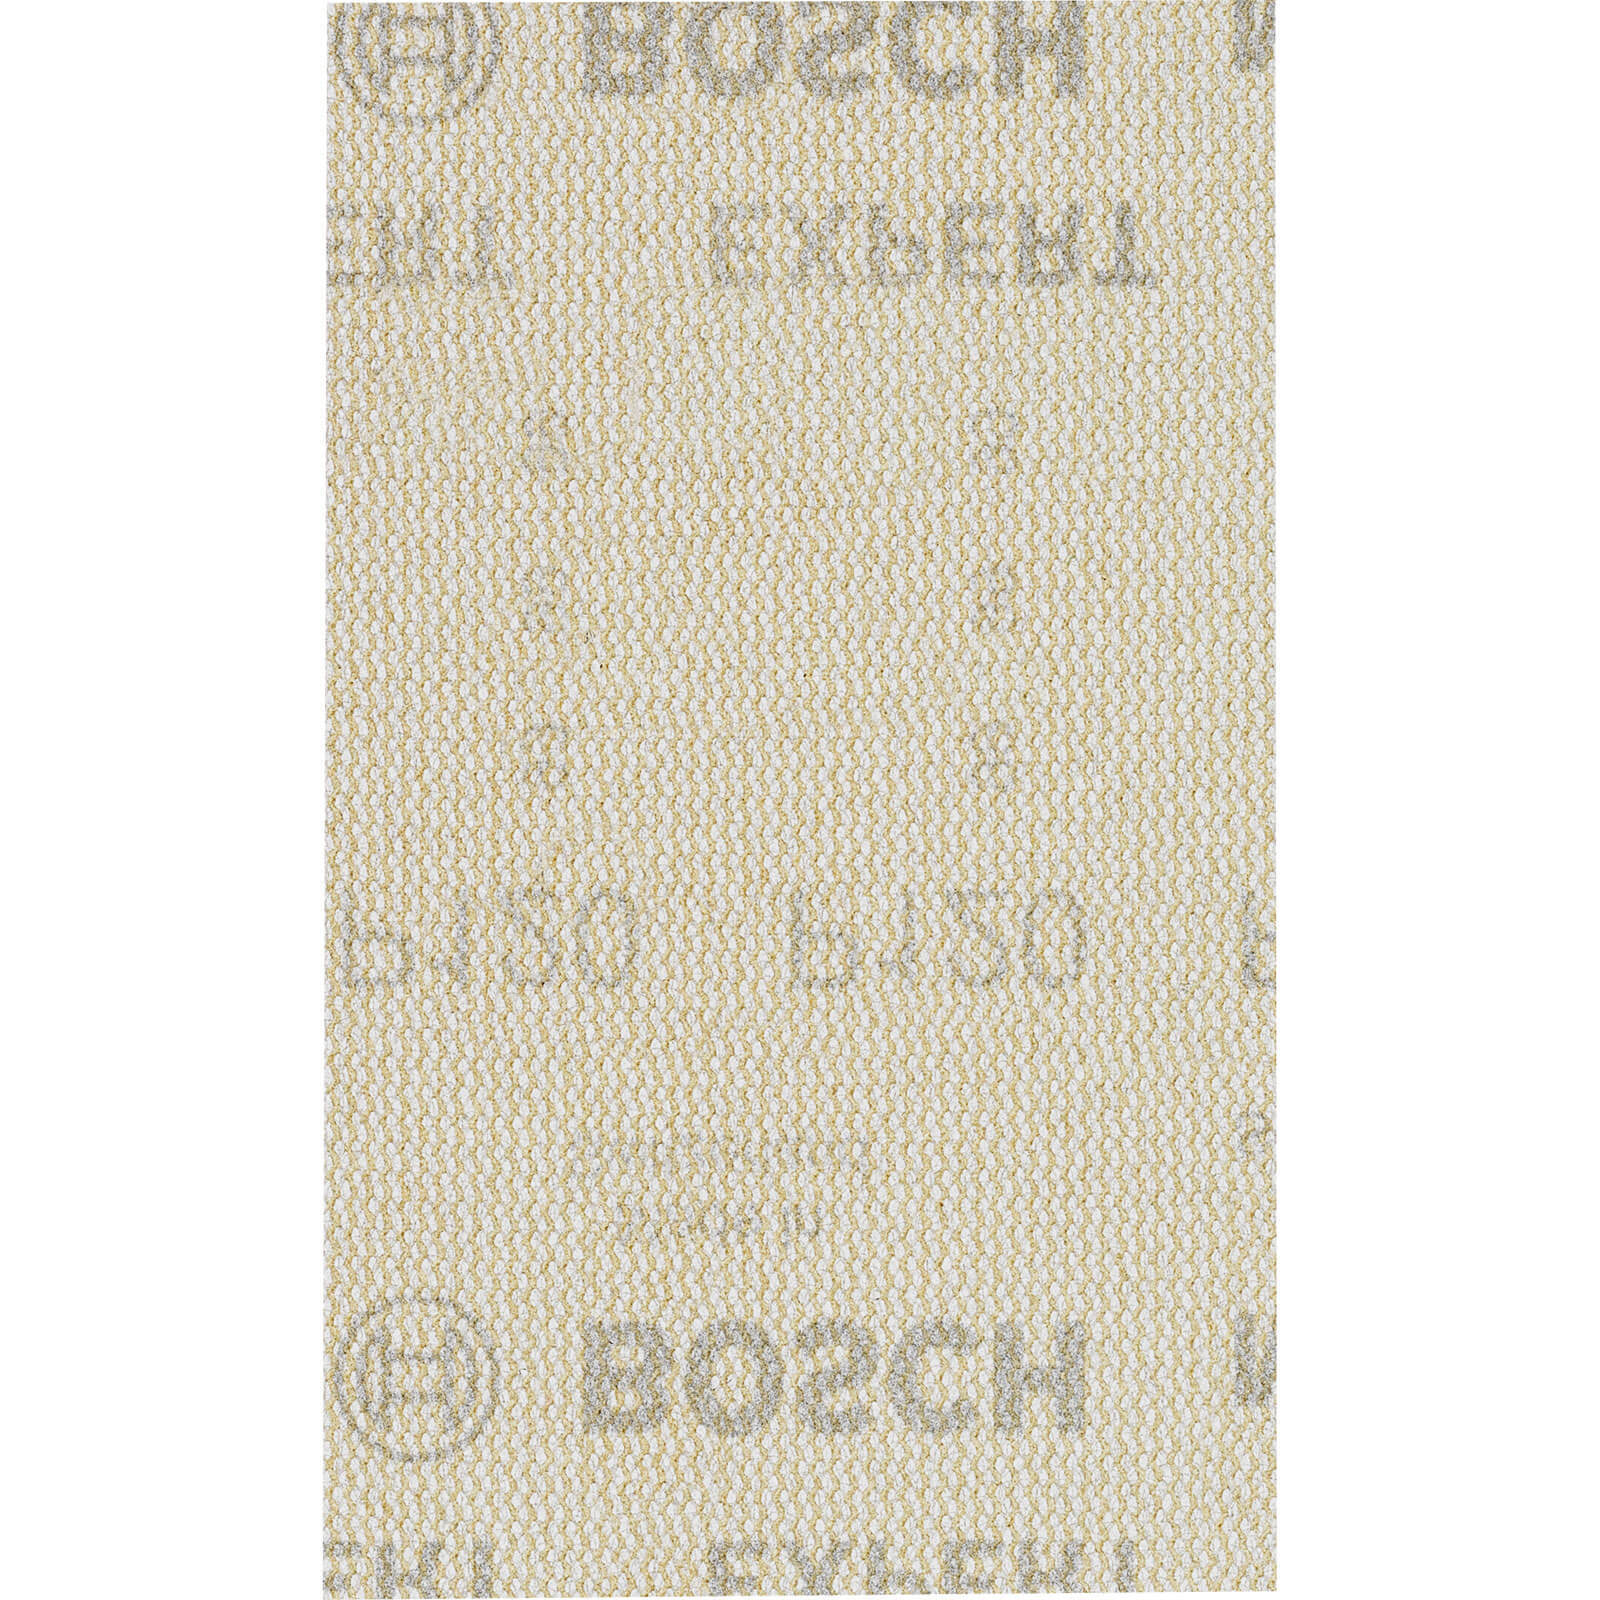 Bosch Expert M480 80mm x 133mm Net Abrasive Sanding Sheets 80mm x 133mm 120g Pack of 10